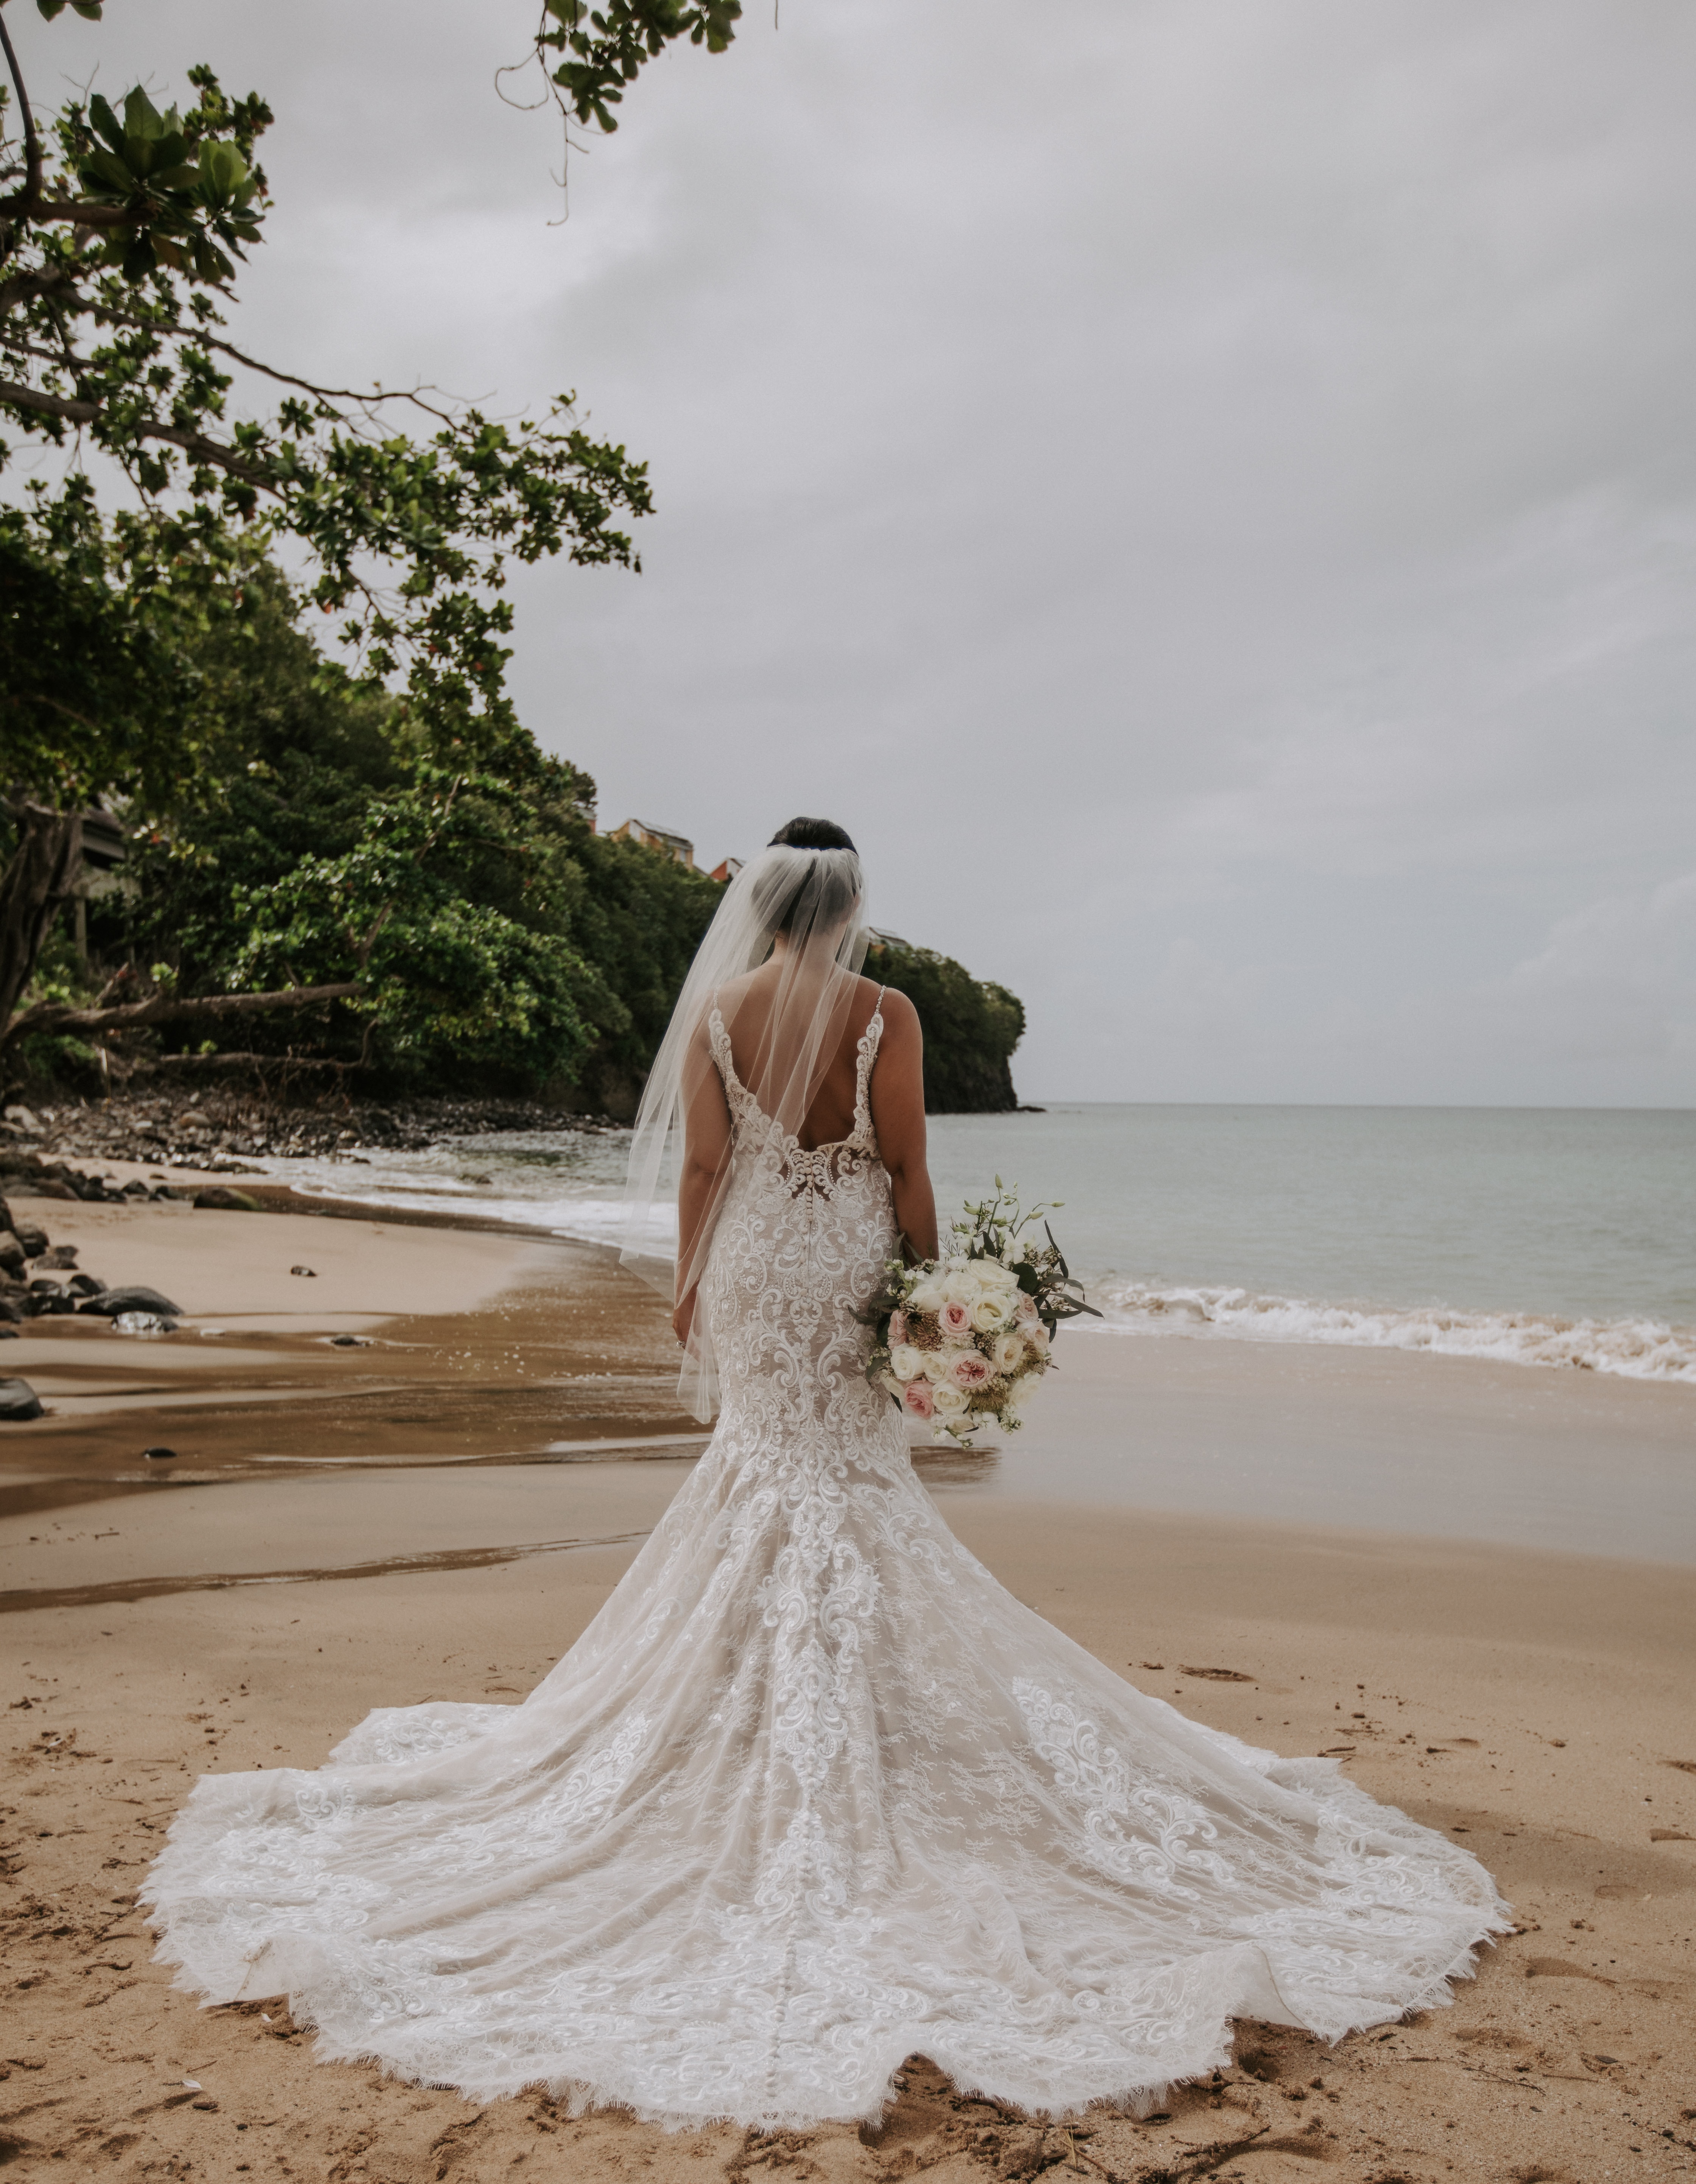 Eine Braut steht in ihrem Hochzeitskleid am Strand.